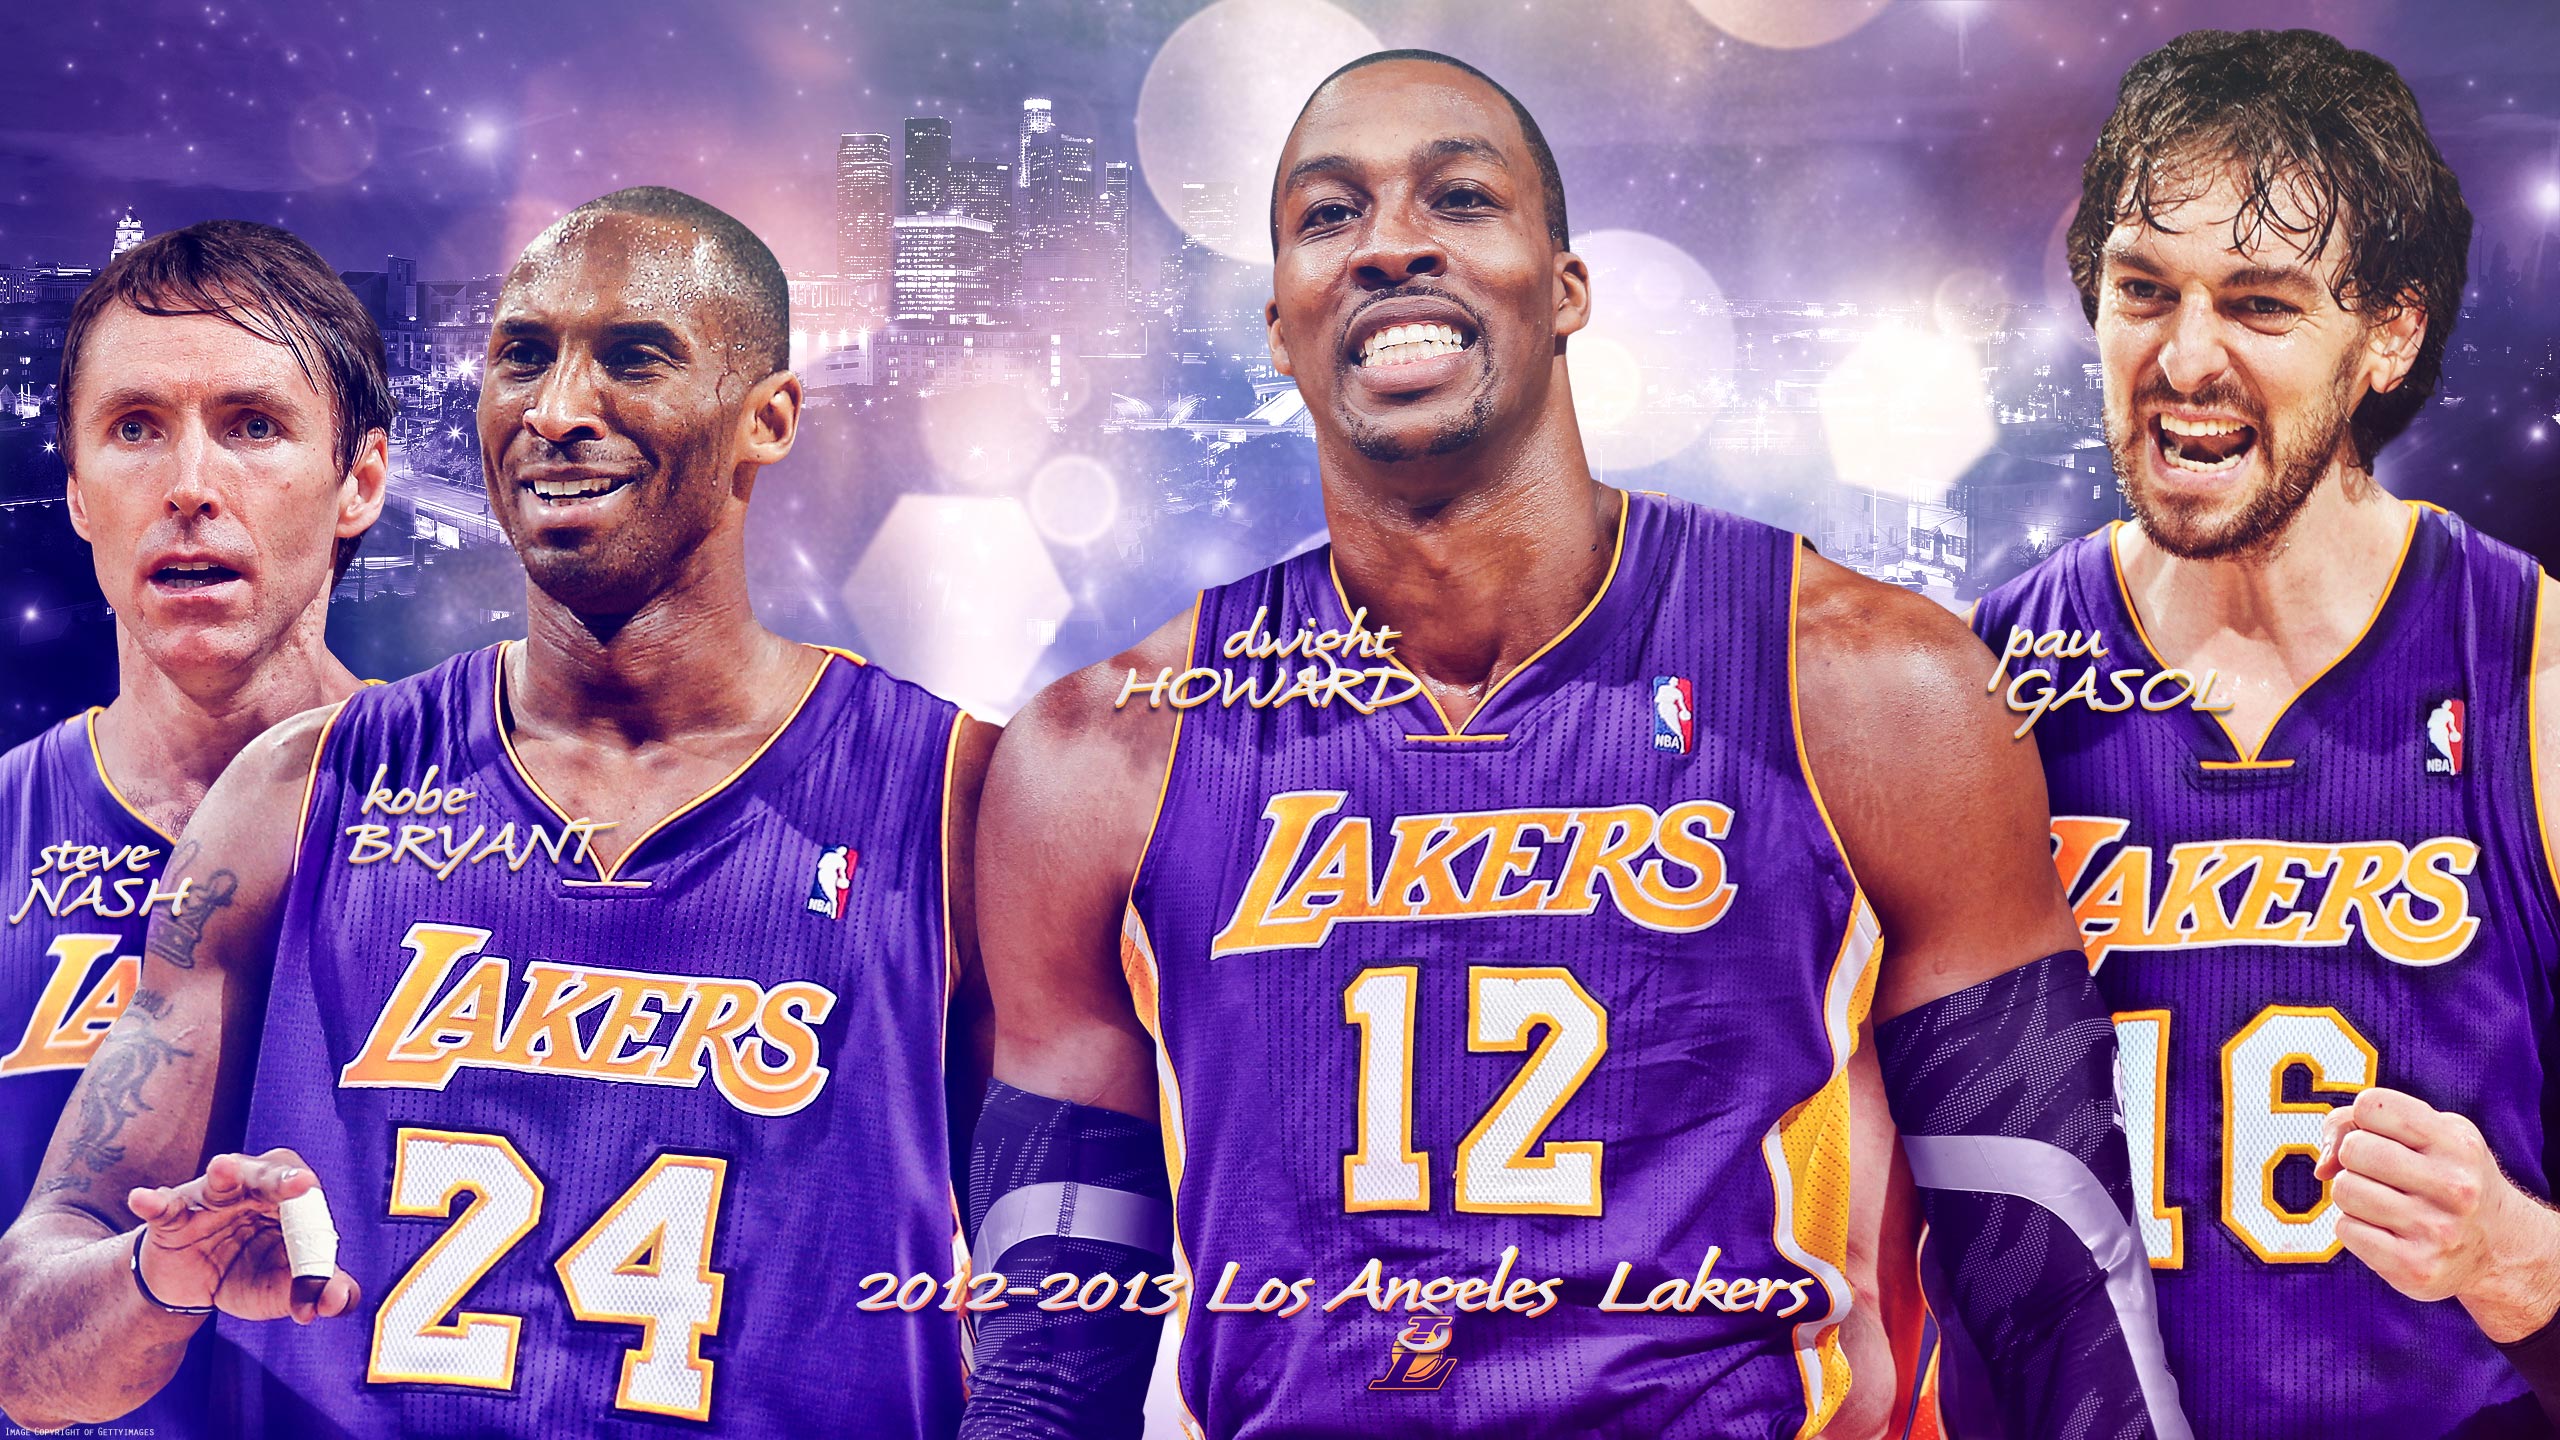 Download NBA iPhone Kobe Bryant Los Angeles Lakers 24 Wallpaper